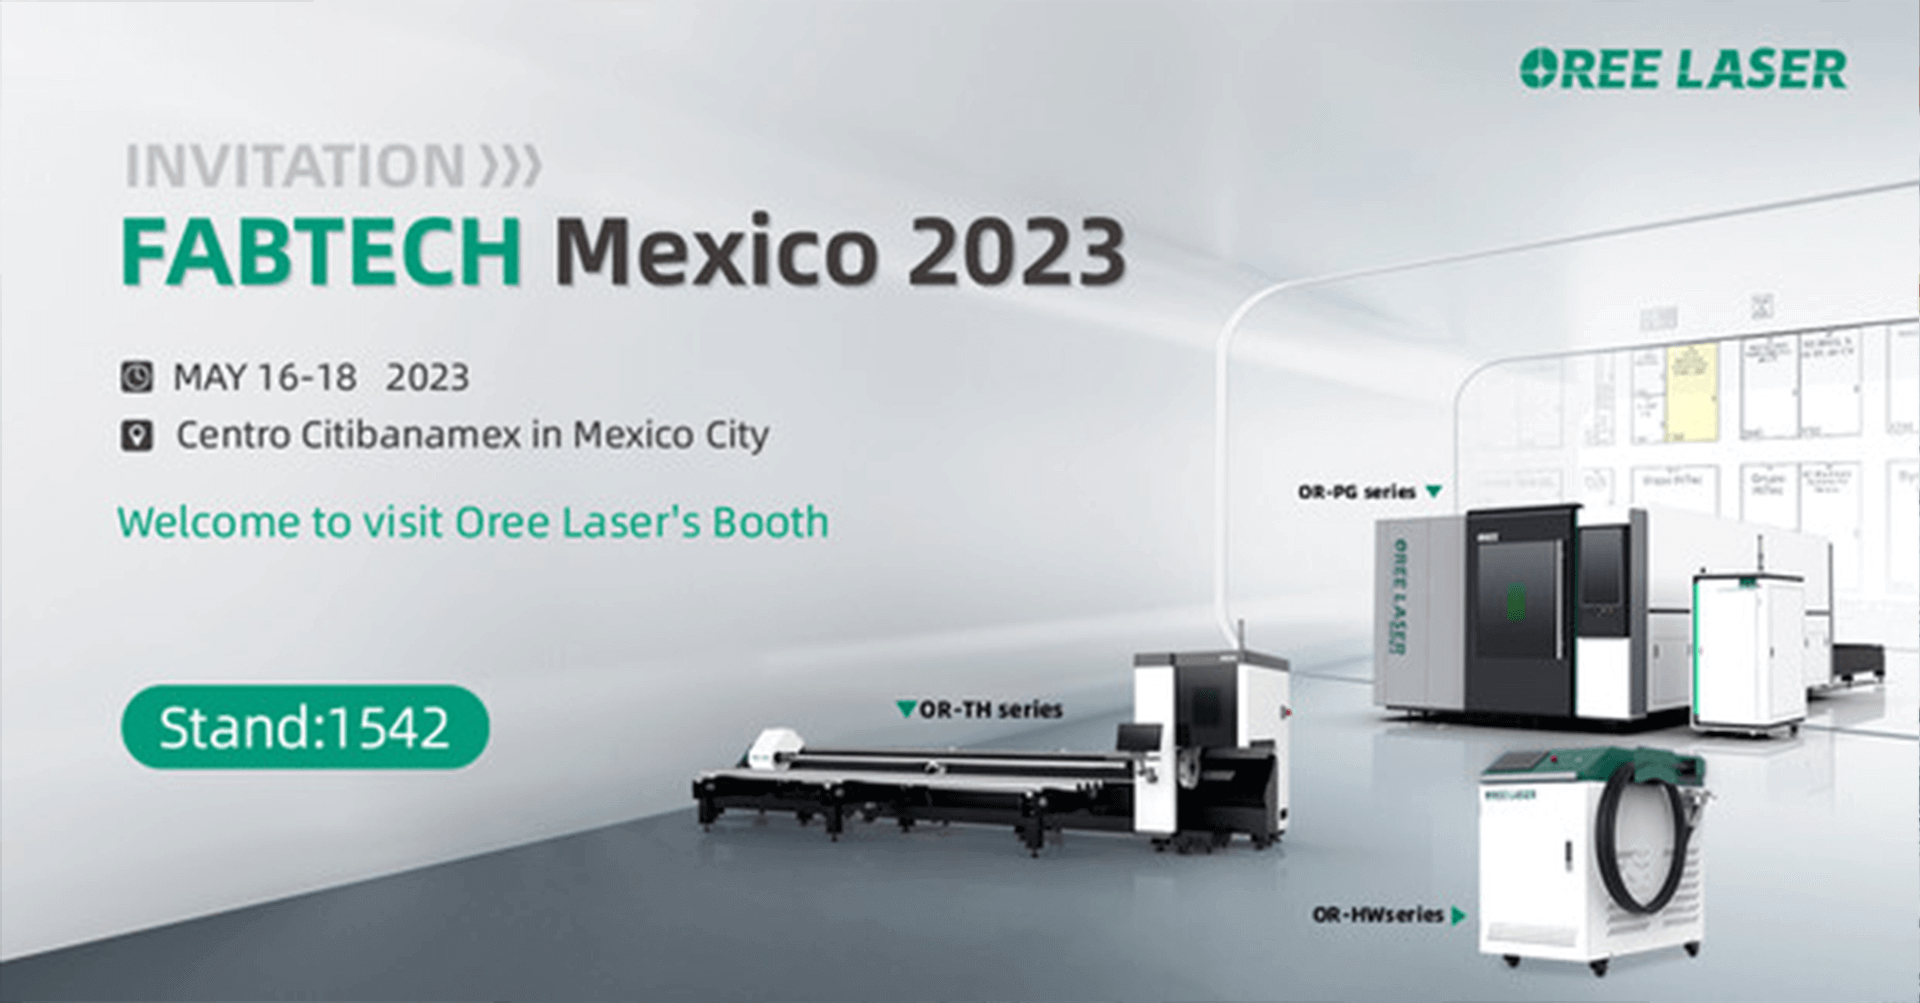 OREE LASER рады сообщить, что FABTECH 2023 Mexico пройдет с 16 по 18 мая, и OREE Laser примет участие.